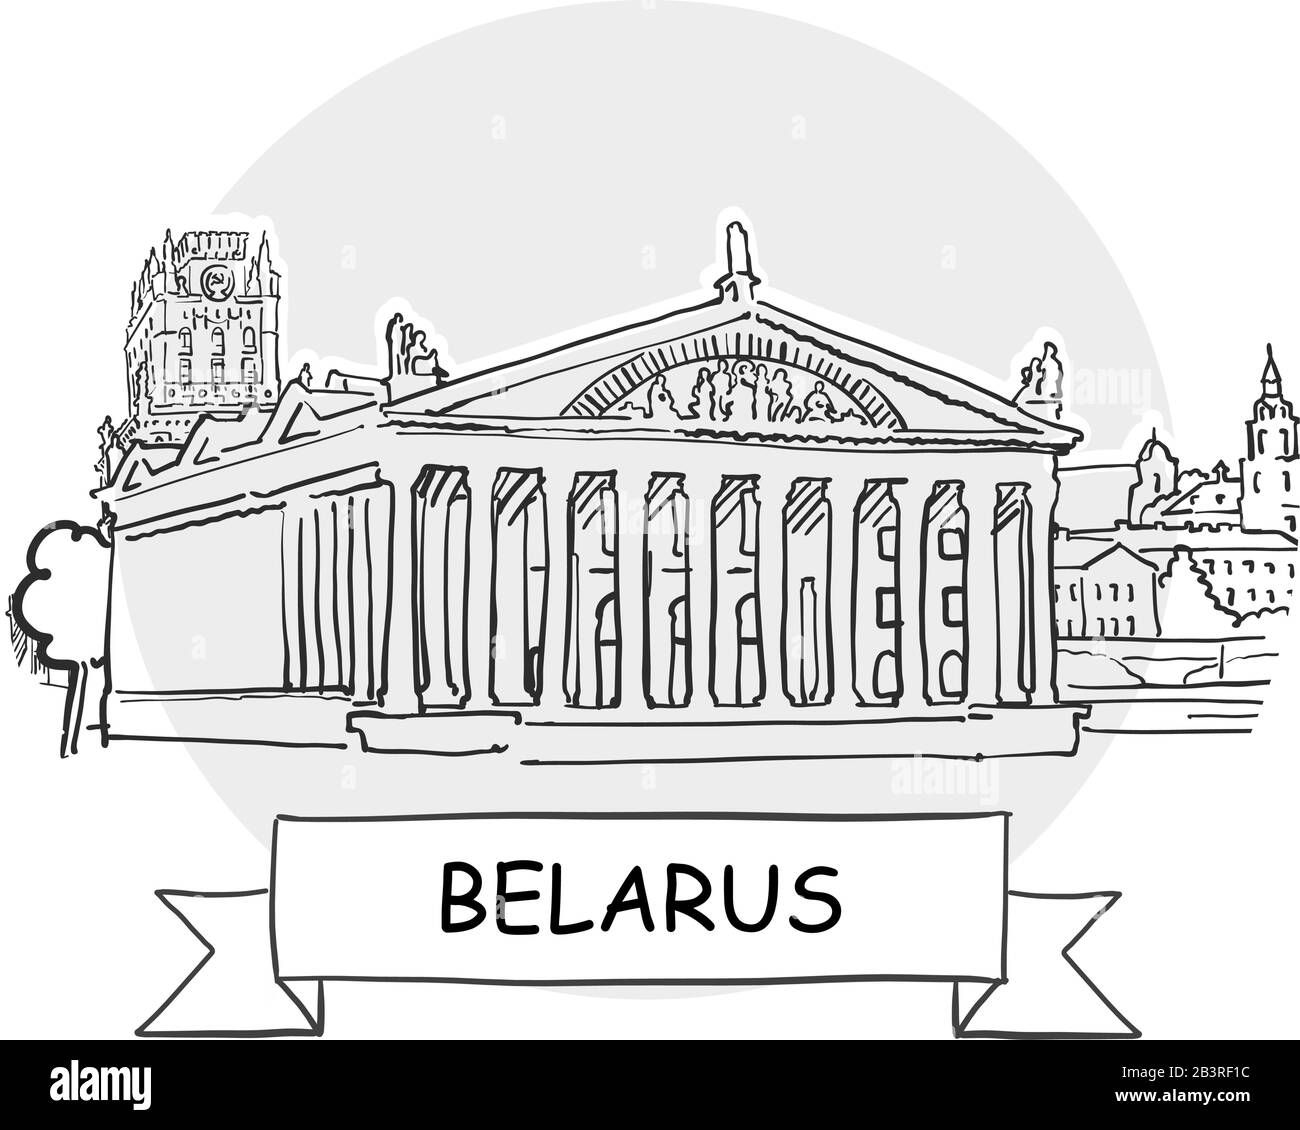 Belarus Segno Vettore Urbano Disegnato A Mano. Illustrazione Della Linea Nera Con Barra Multifunzione E Titolo. Illustrazione Vettoriale